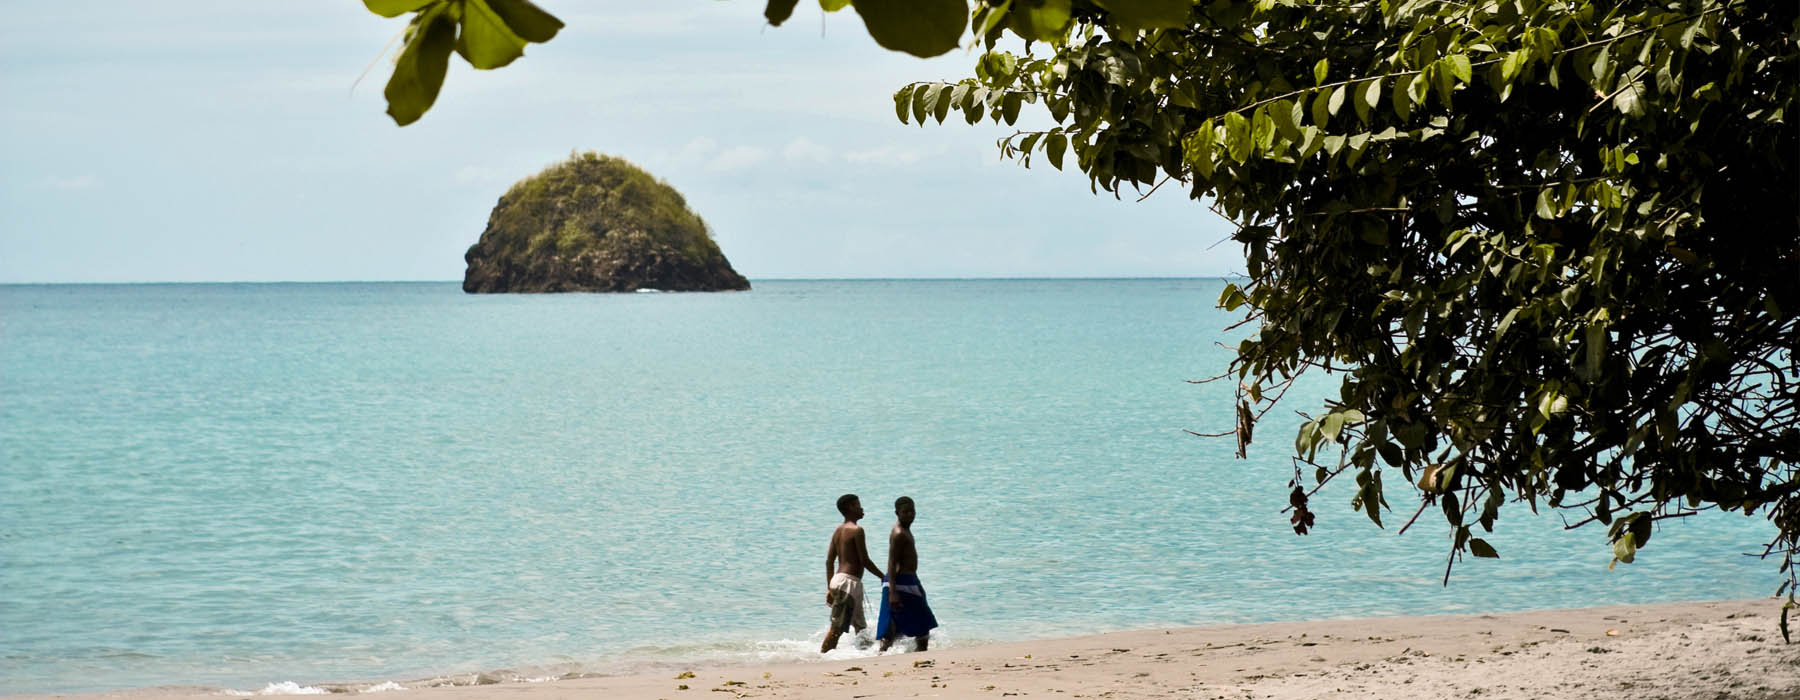 Vacances de février Martinique